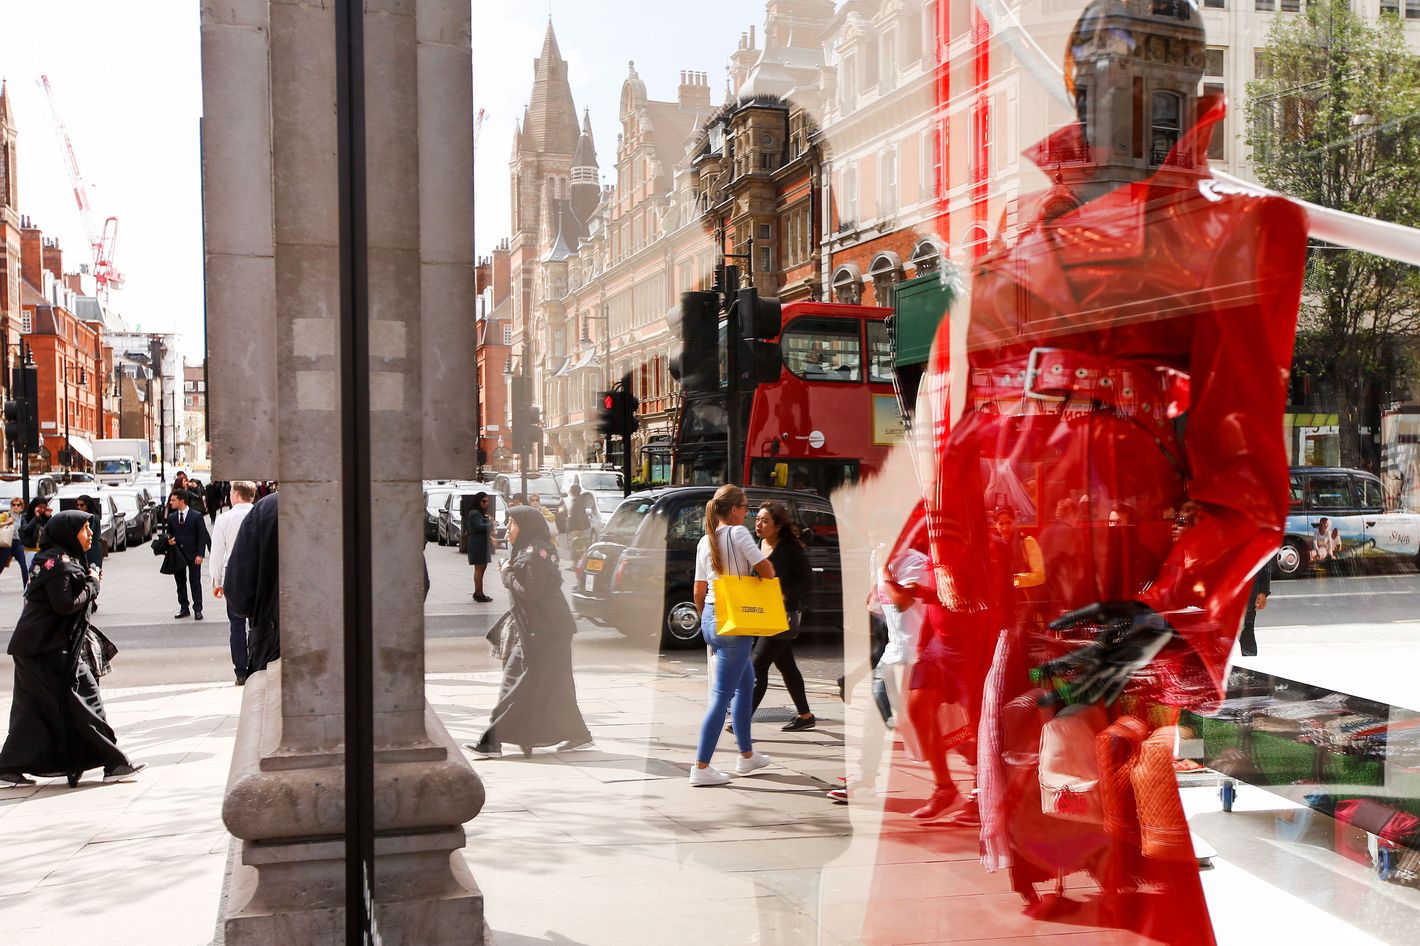 Nicholas Kirkwood Closes U.S. Retail Store; Revamps London